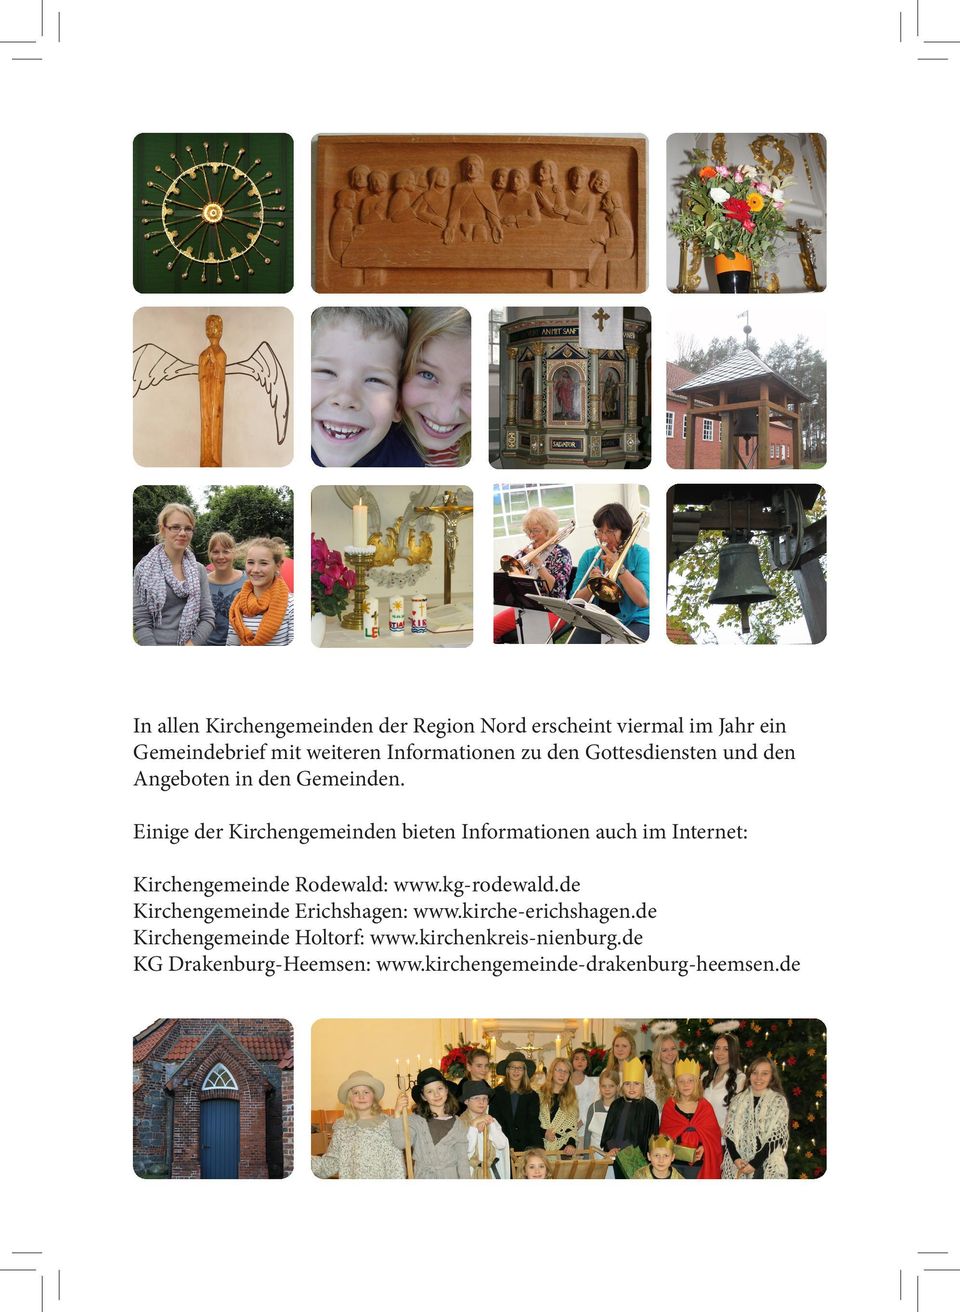 Einige der Kirchengemeinden bieten Informationen auch im Internet: Kirchengemeinde Rodewald: www.kg-rodewald.